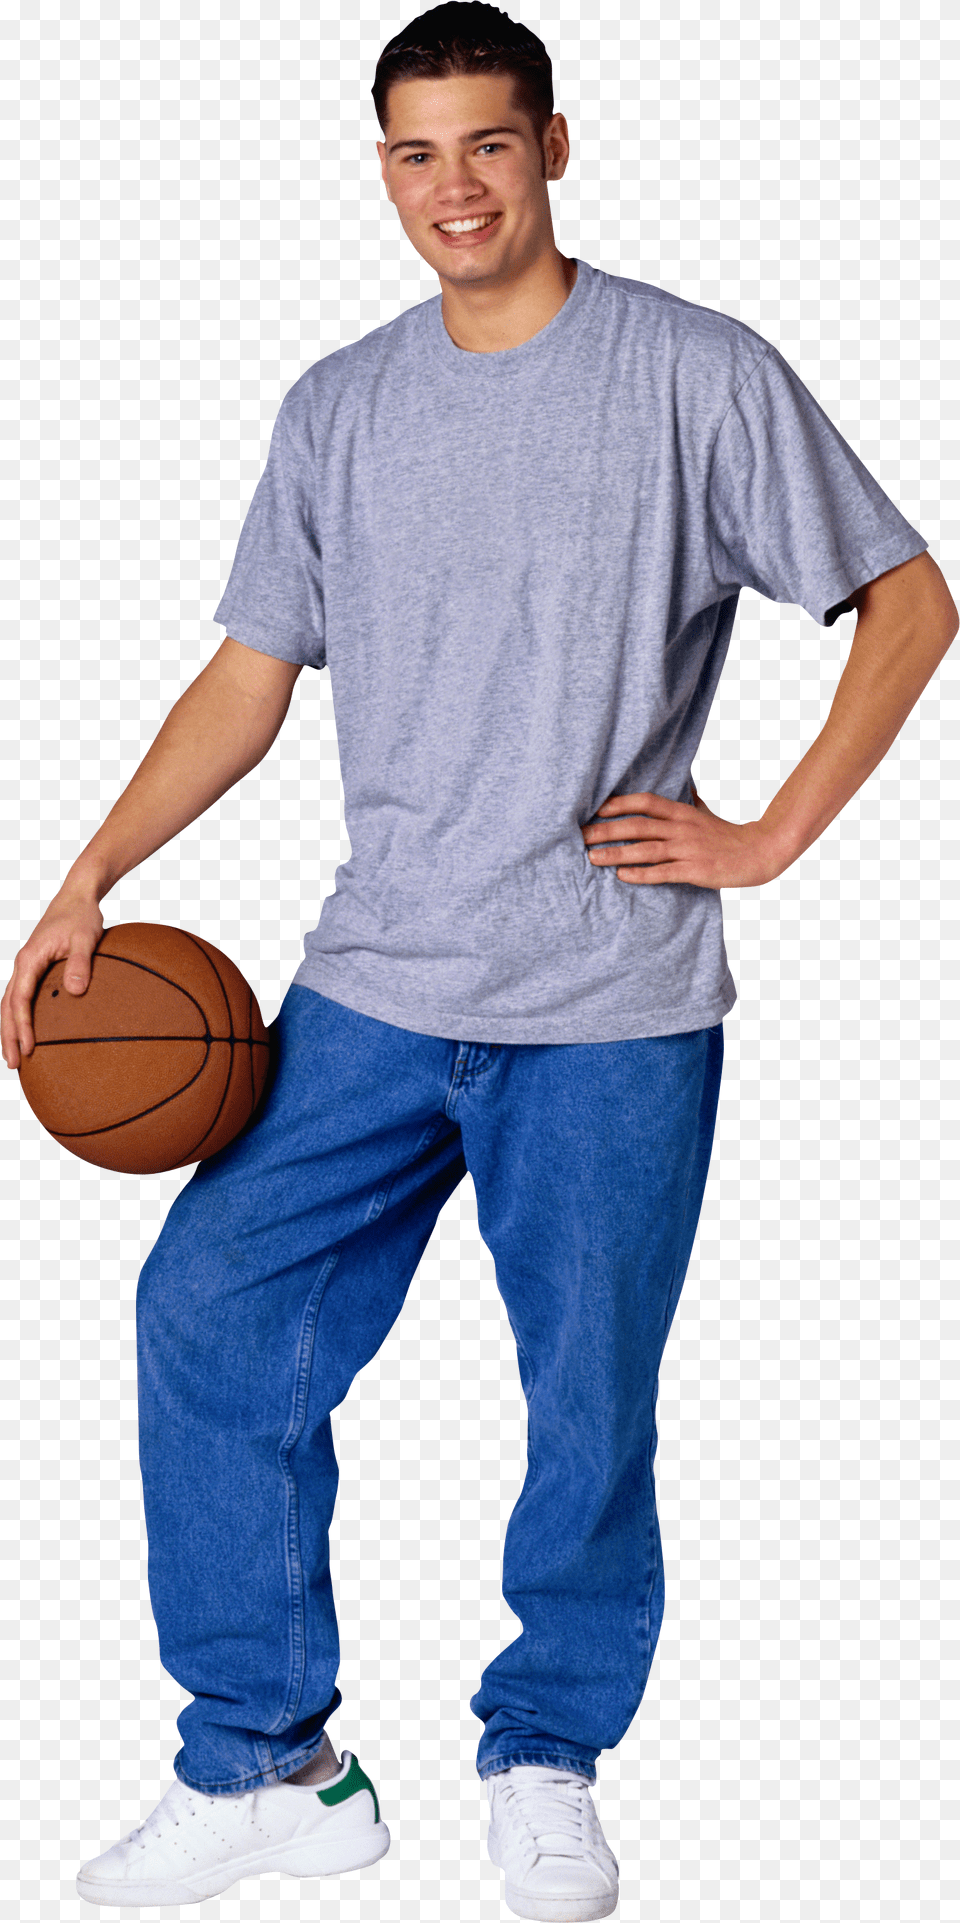 Sportsman Image, T-shirt, Ball, Basketball, Basketball (ball) Png